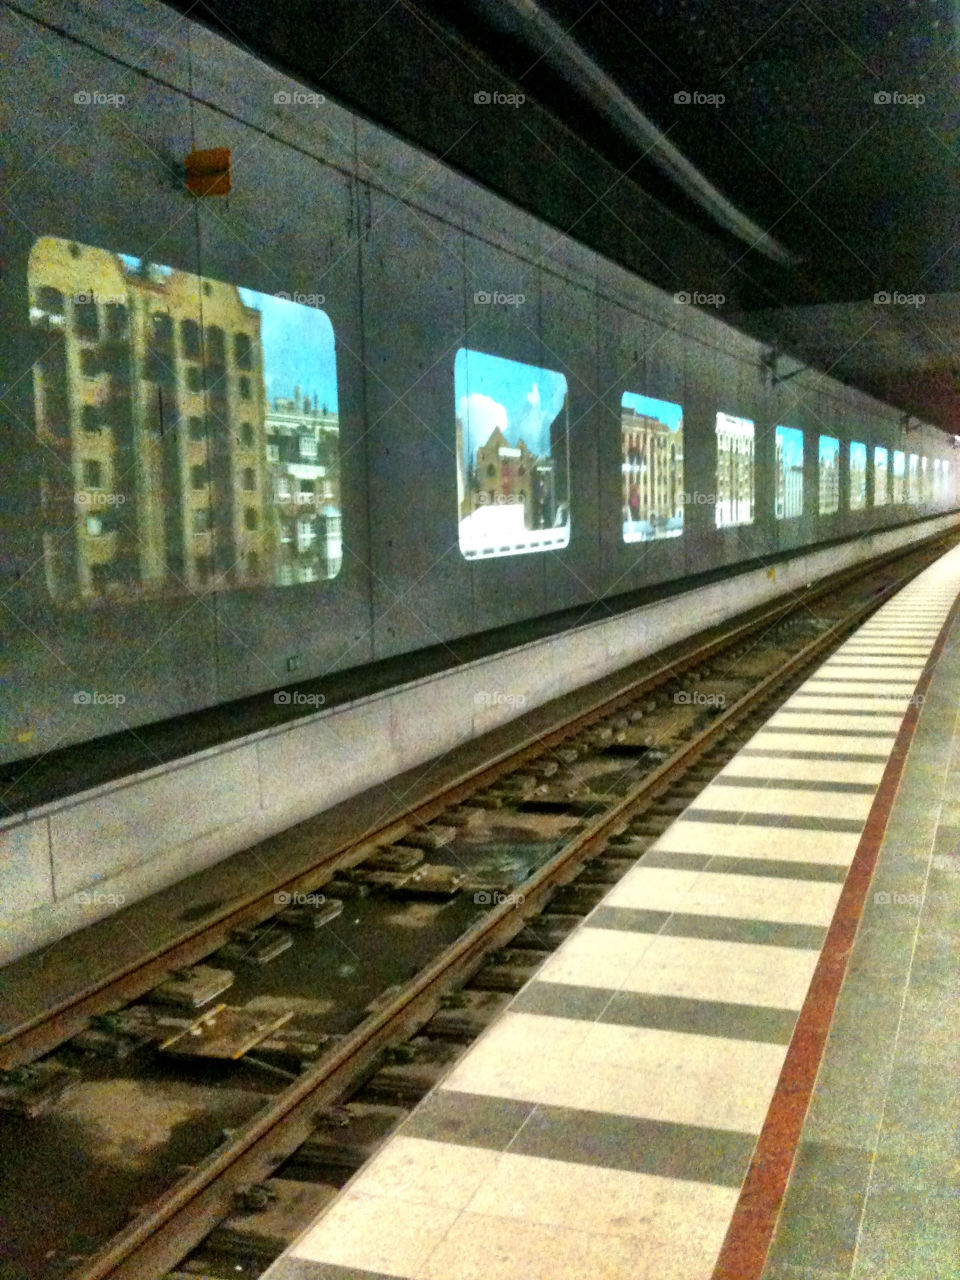 malmö windows central station railway by gitt123